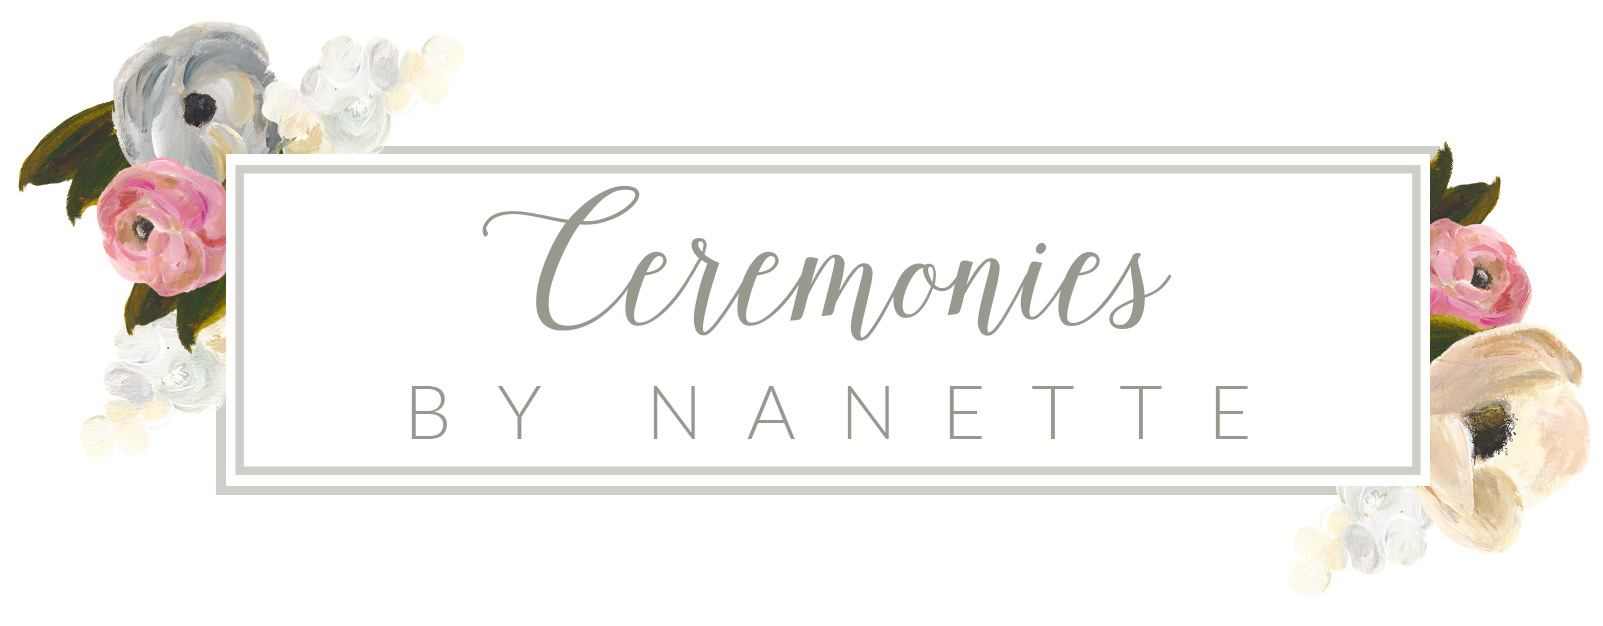 Ceremonies By Nanette McIntyre